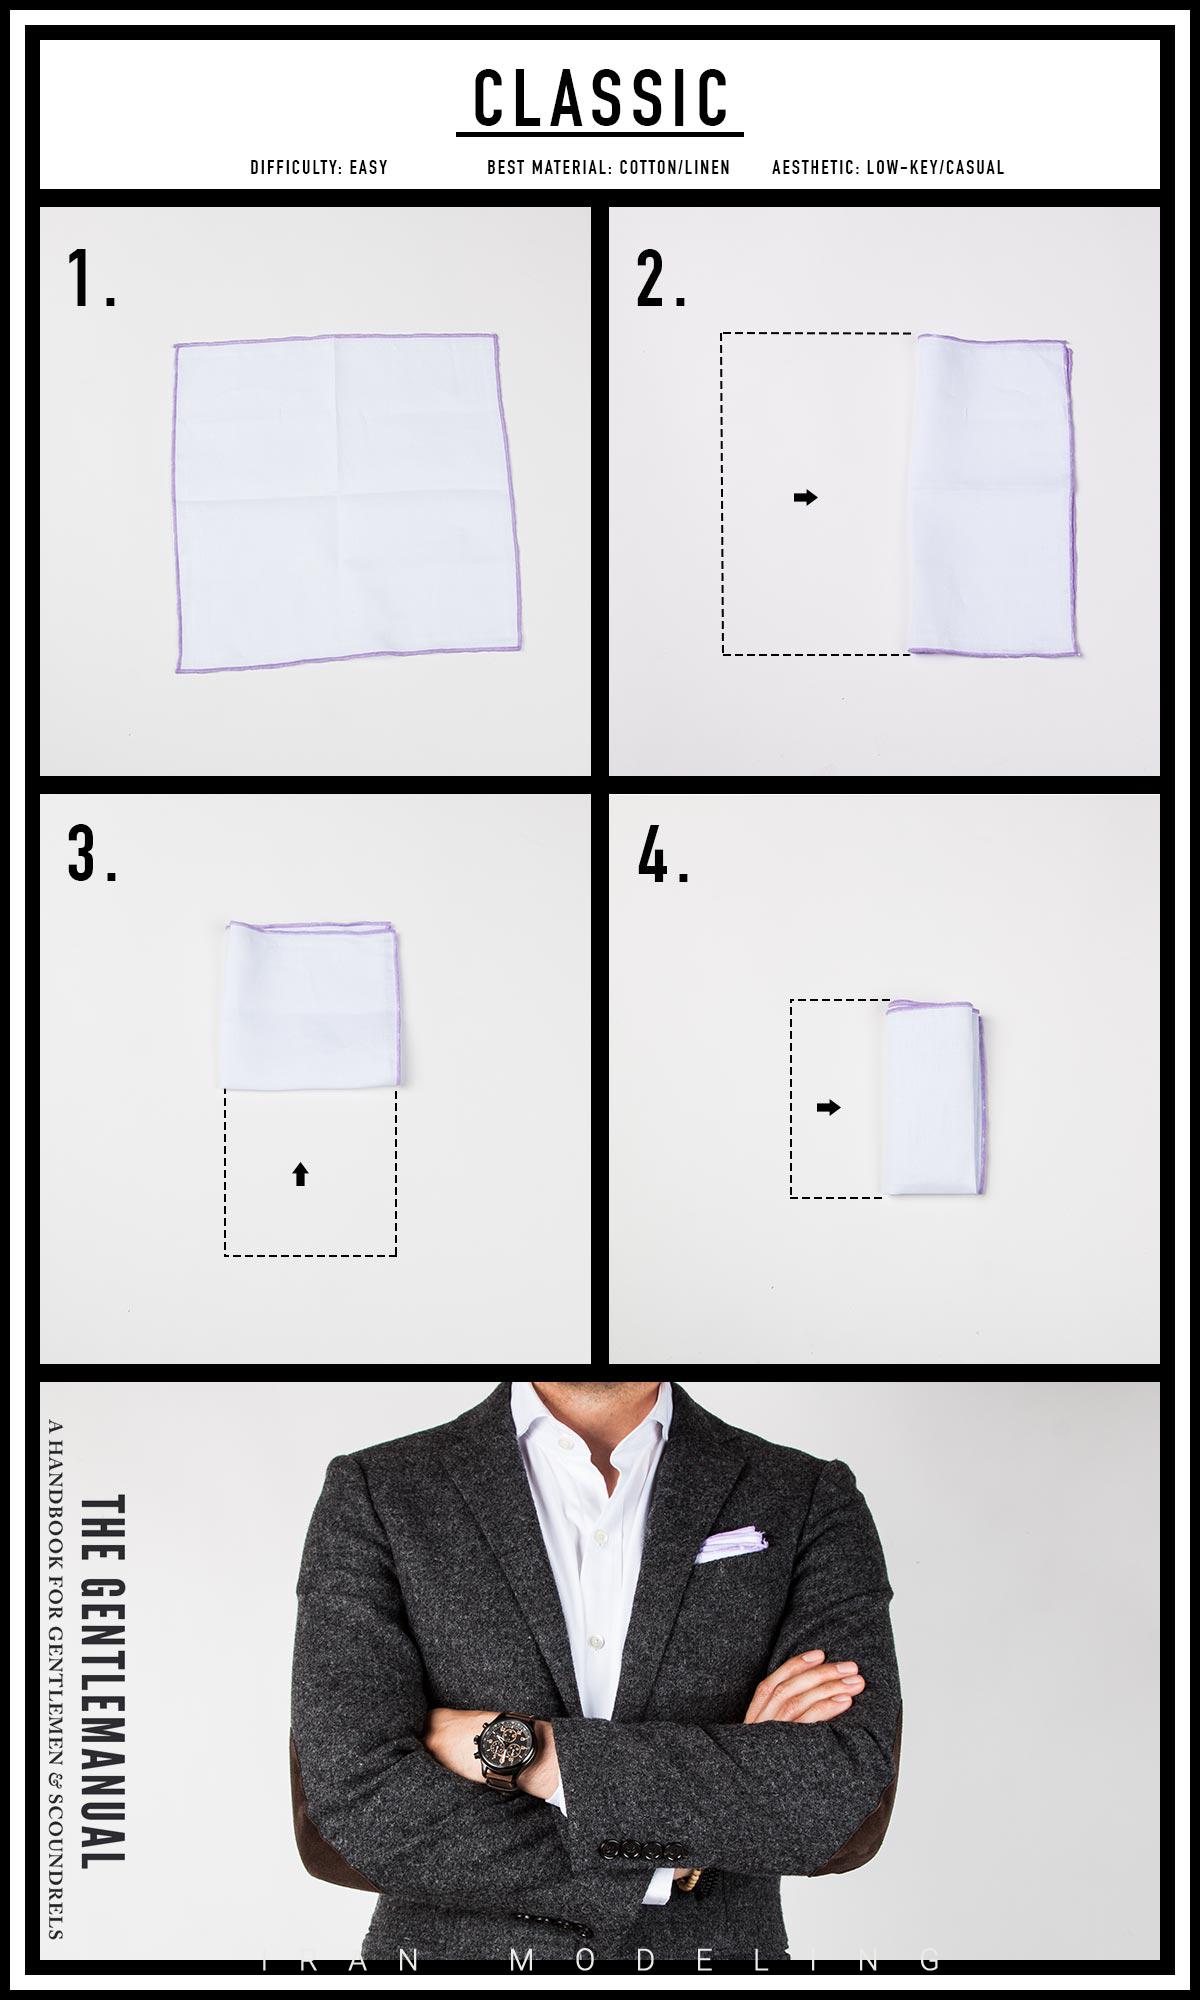 جدیدترین و بهترین طرح های دستمال جیبی کت آقایان امسال 2020 در رنگا های مختلف ایران مدلینگ